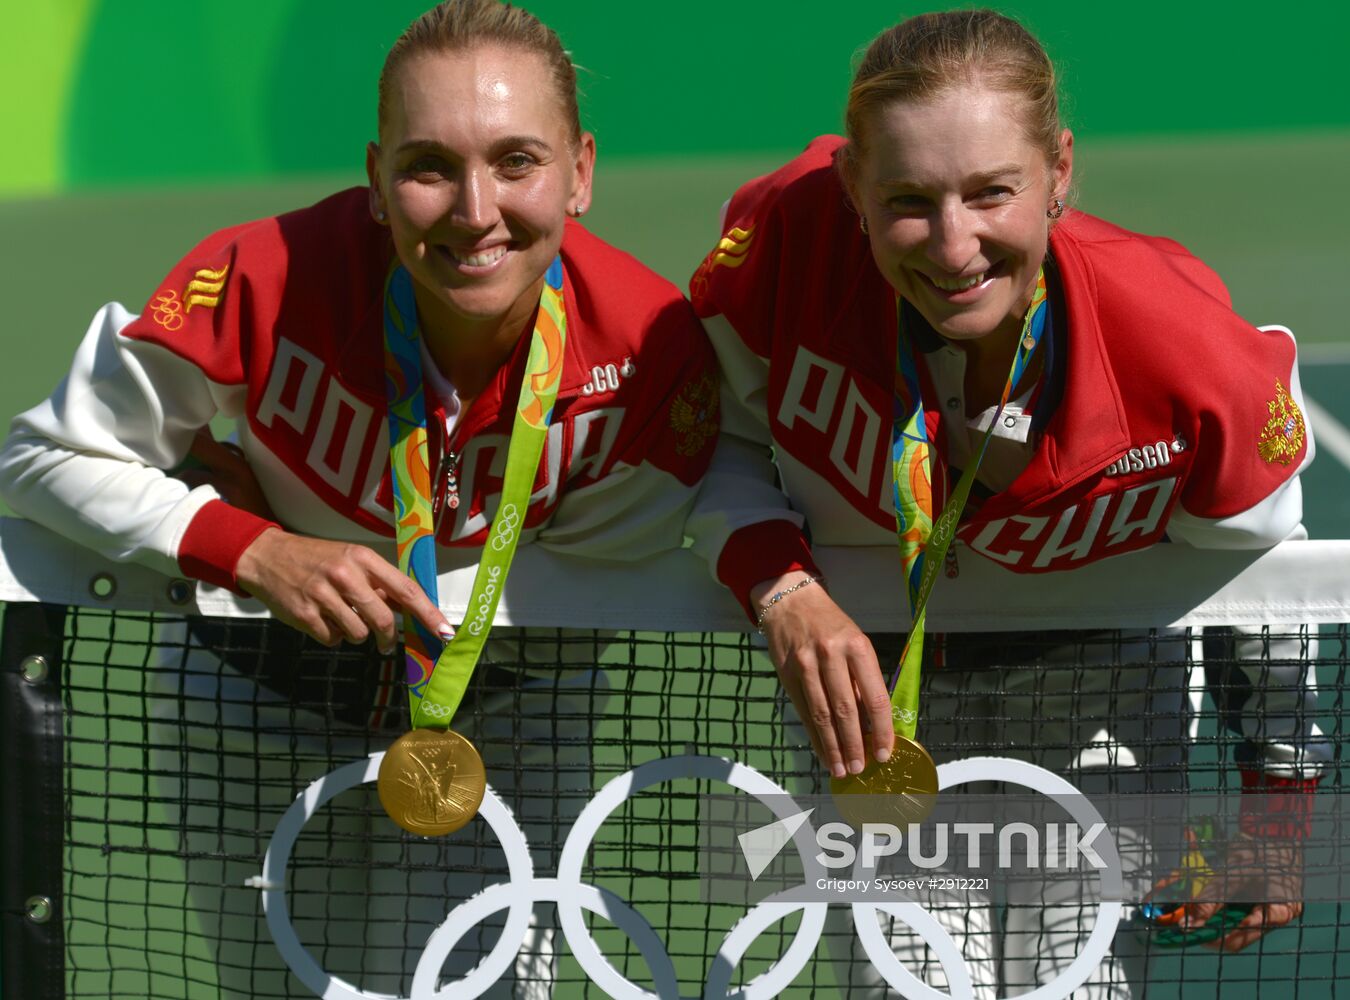 2016 Summer Olympics. Tennis. Women's doubles. Final